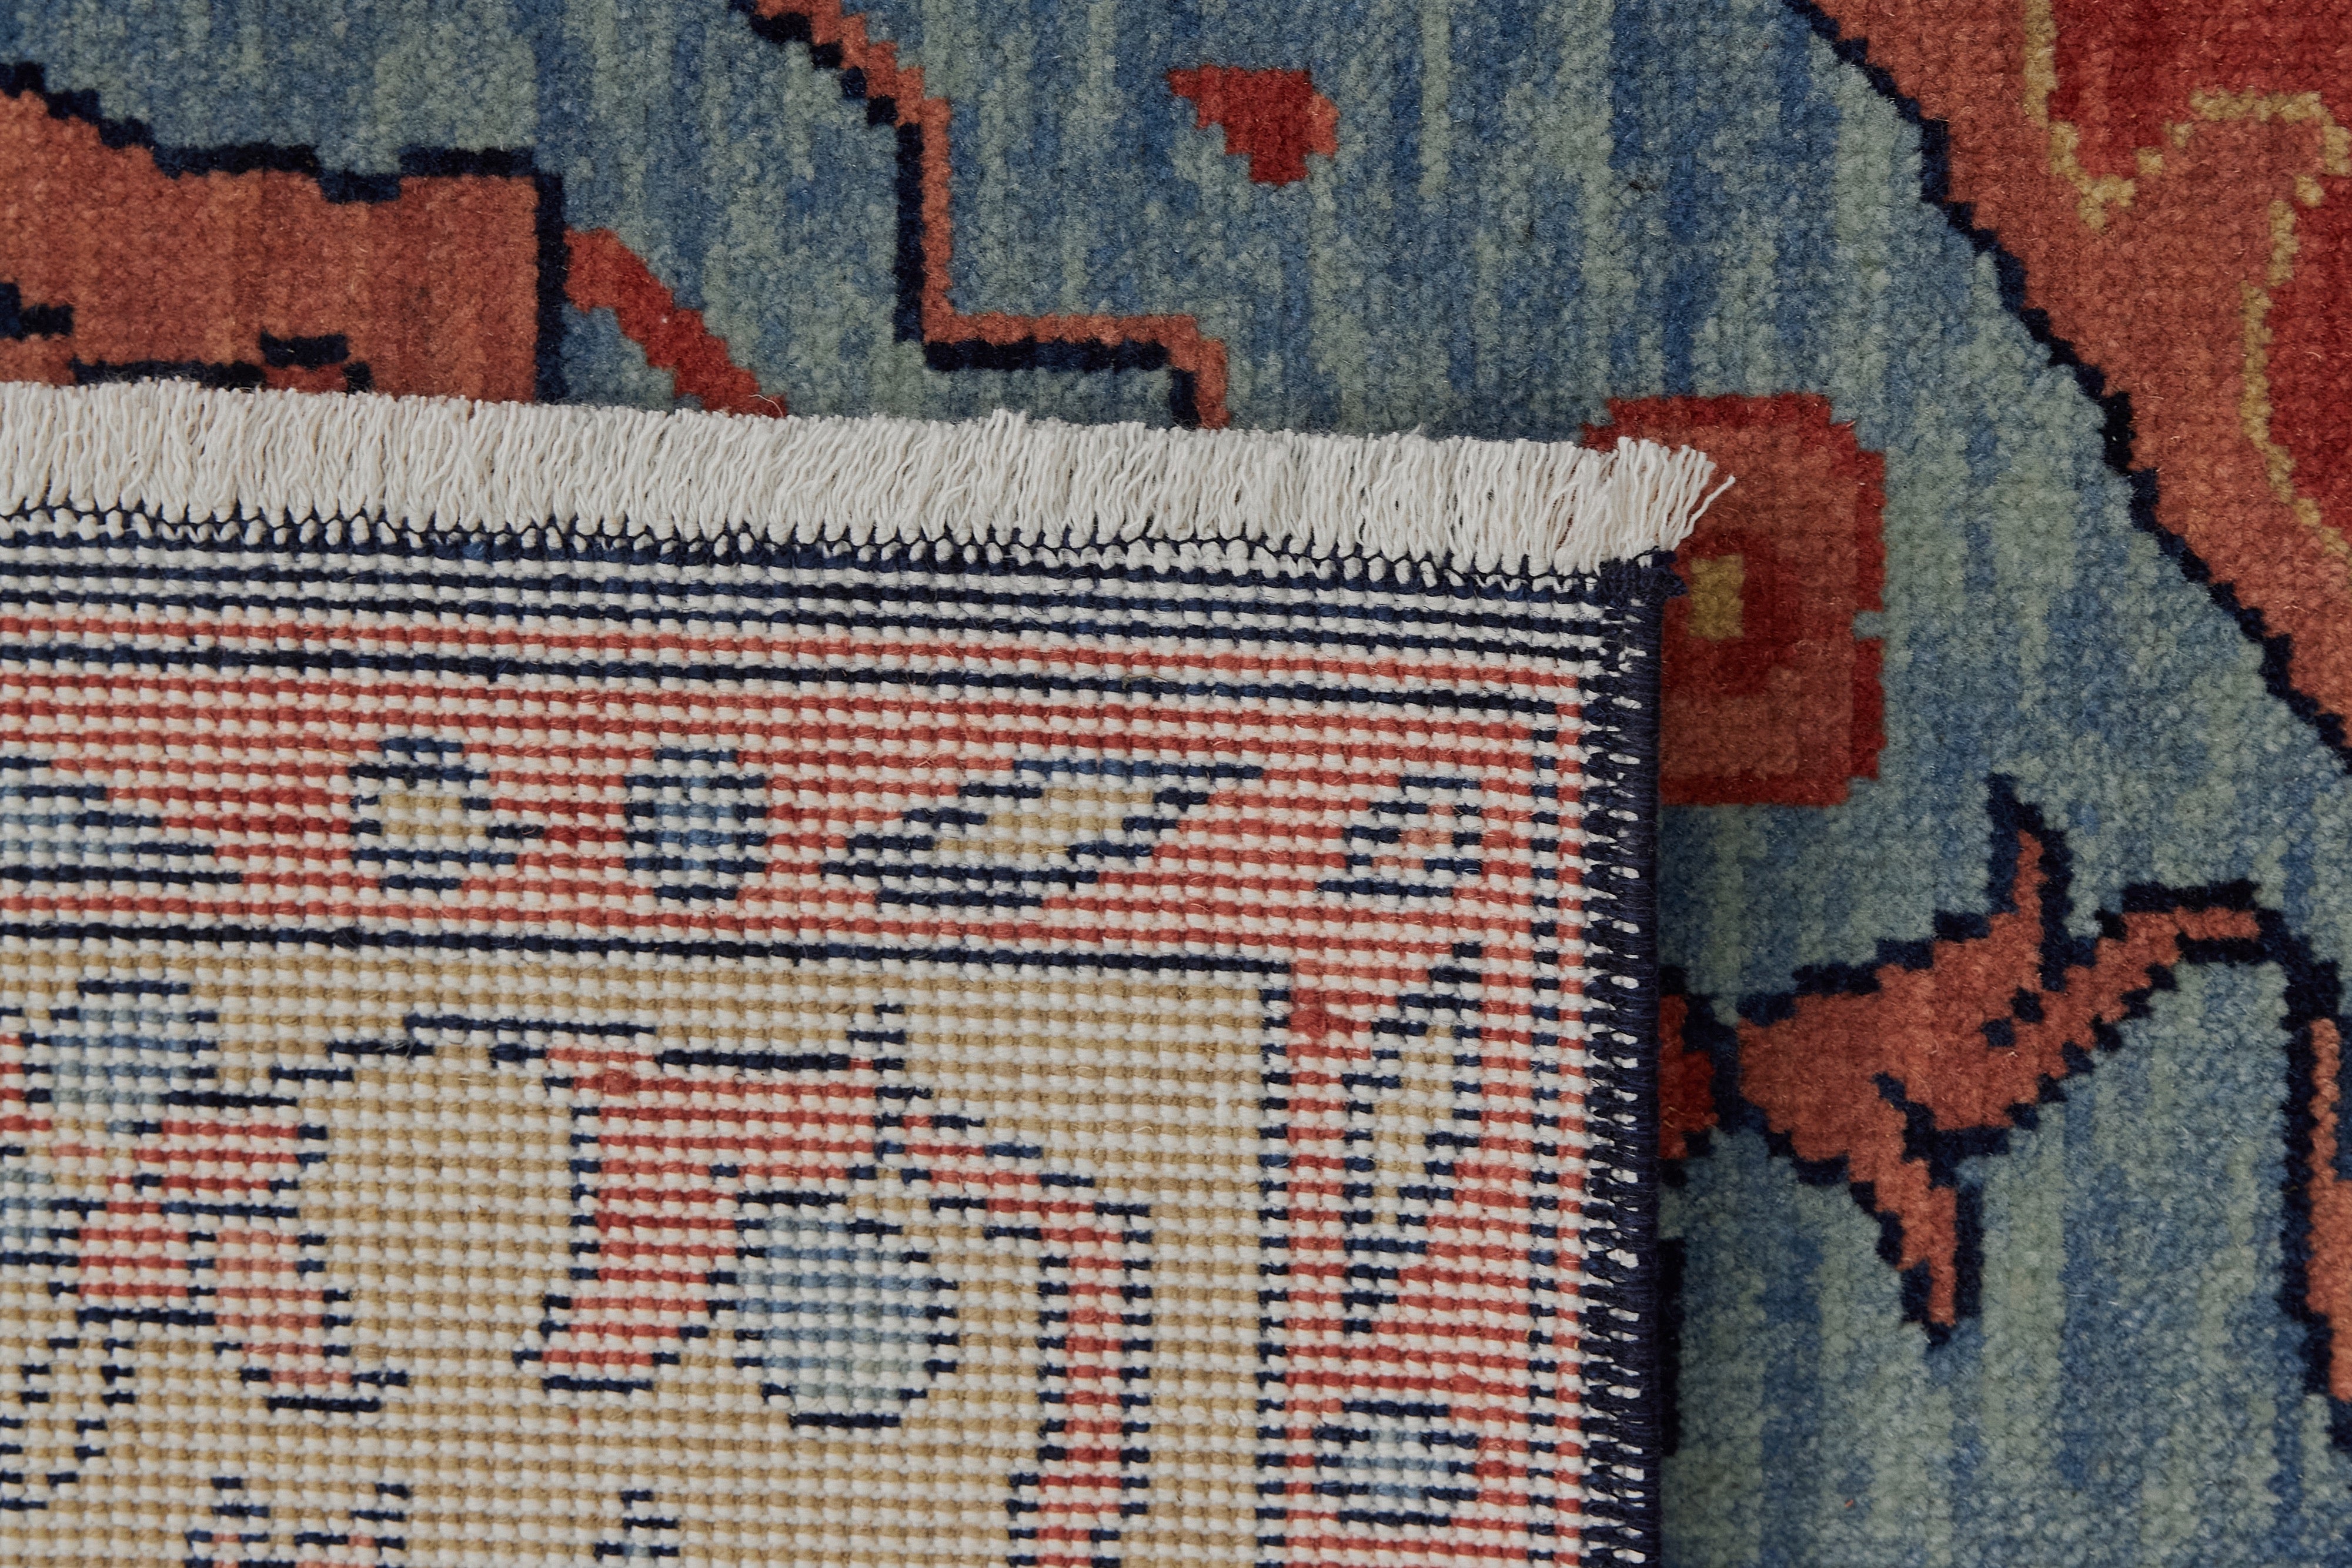 Artisanal Weaving - Soleil's Turkish Carpet Mastery